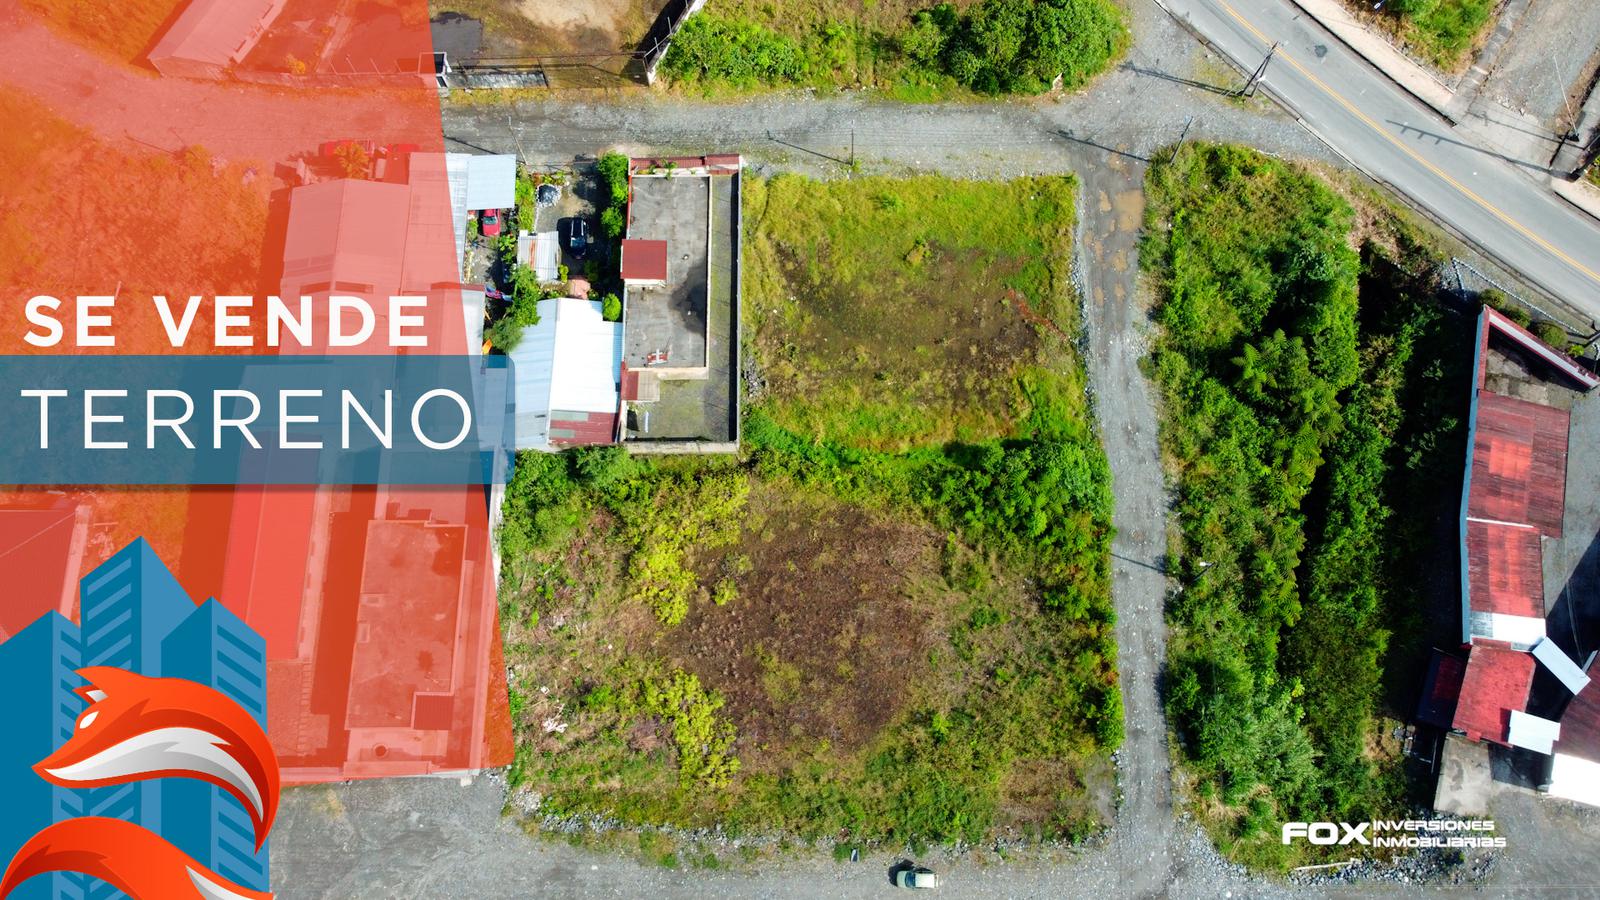 Terreno en venta 1020 Mtrs Puyo - Pastaza - Ecuador